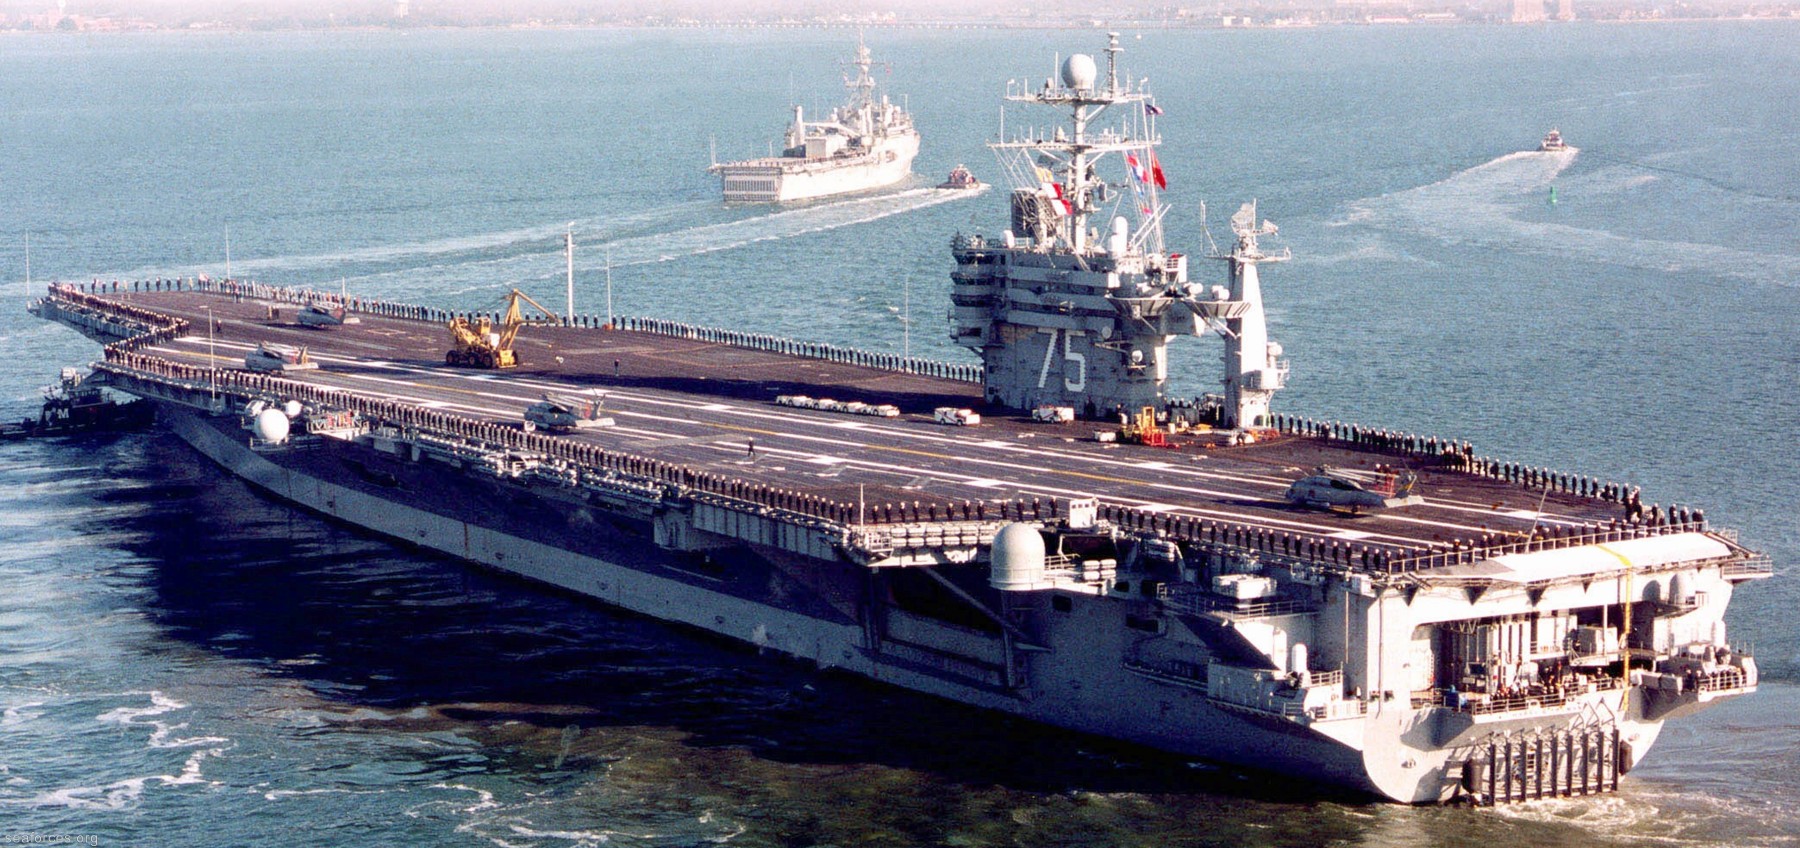 uss harry s. truman cvn-75 aircraft carrier 49 leaving norfolk virginia